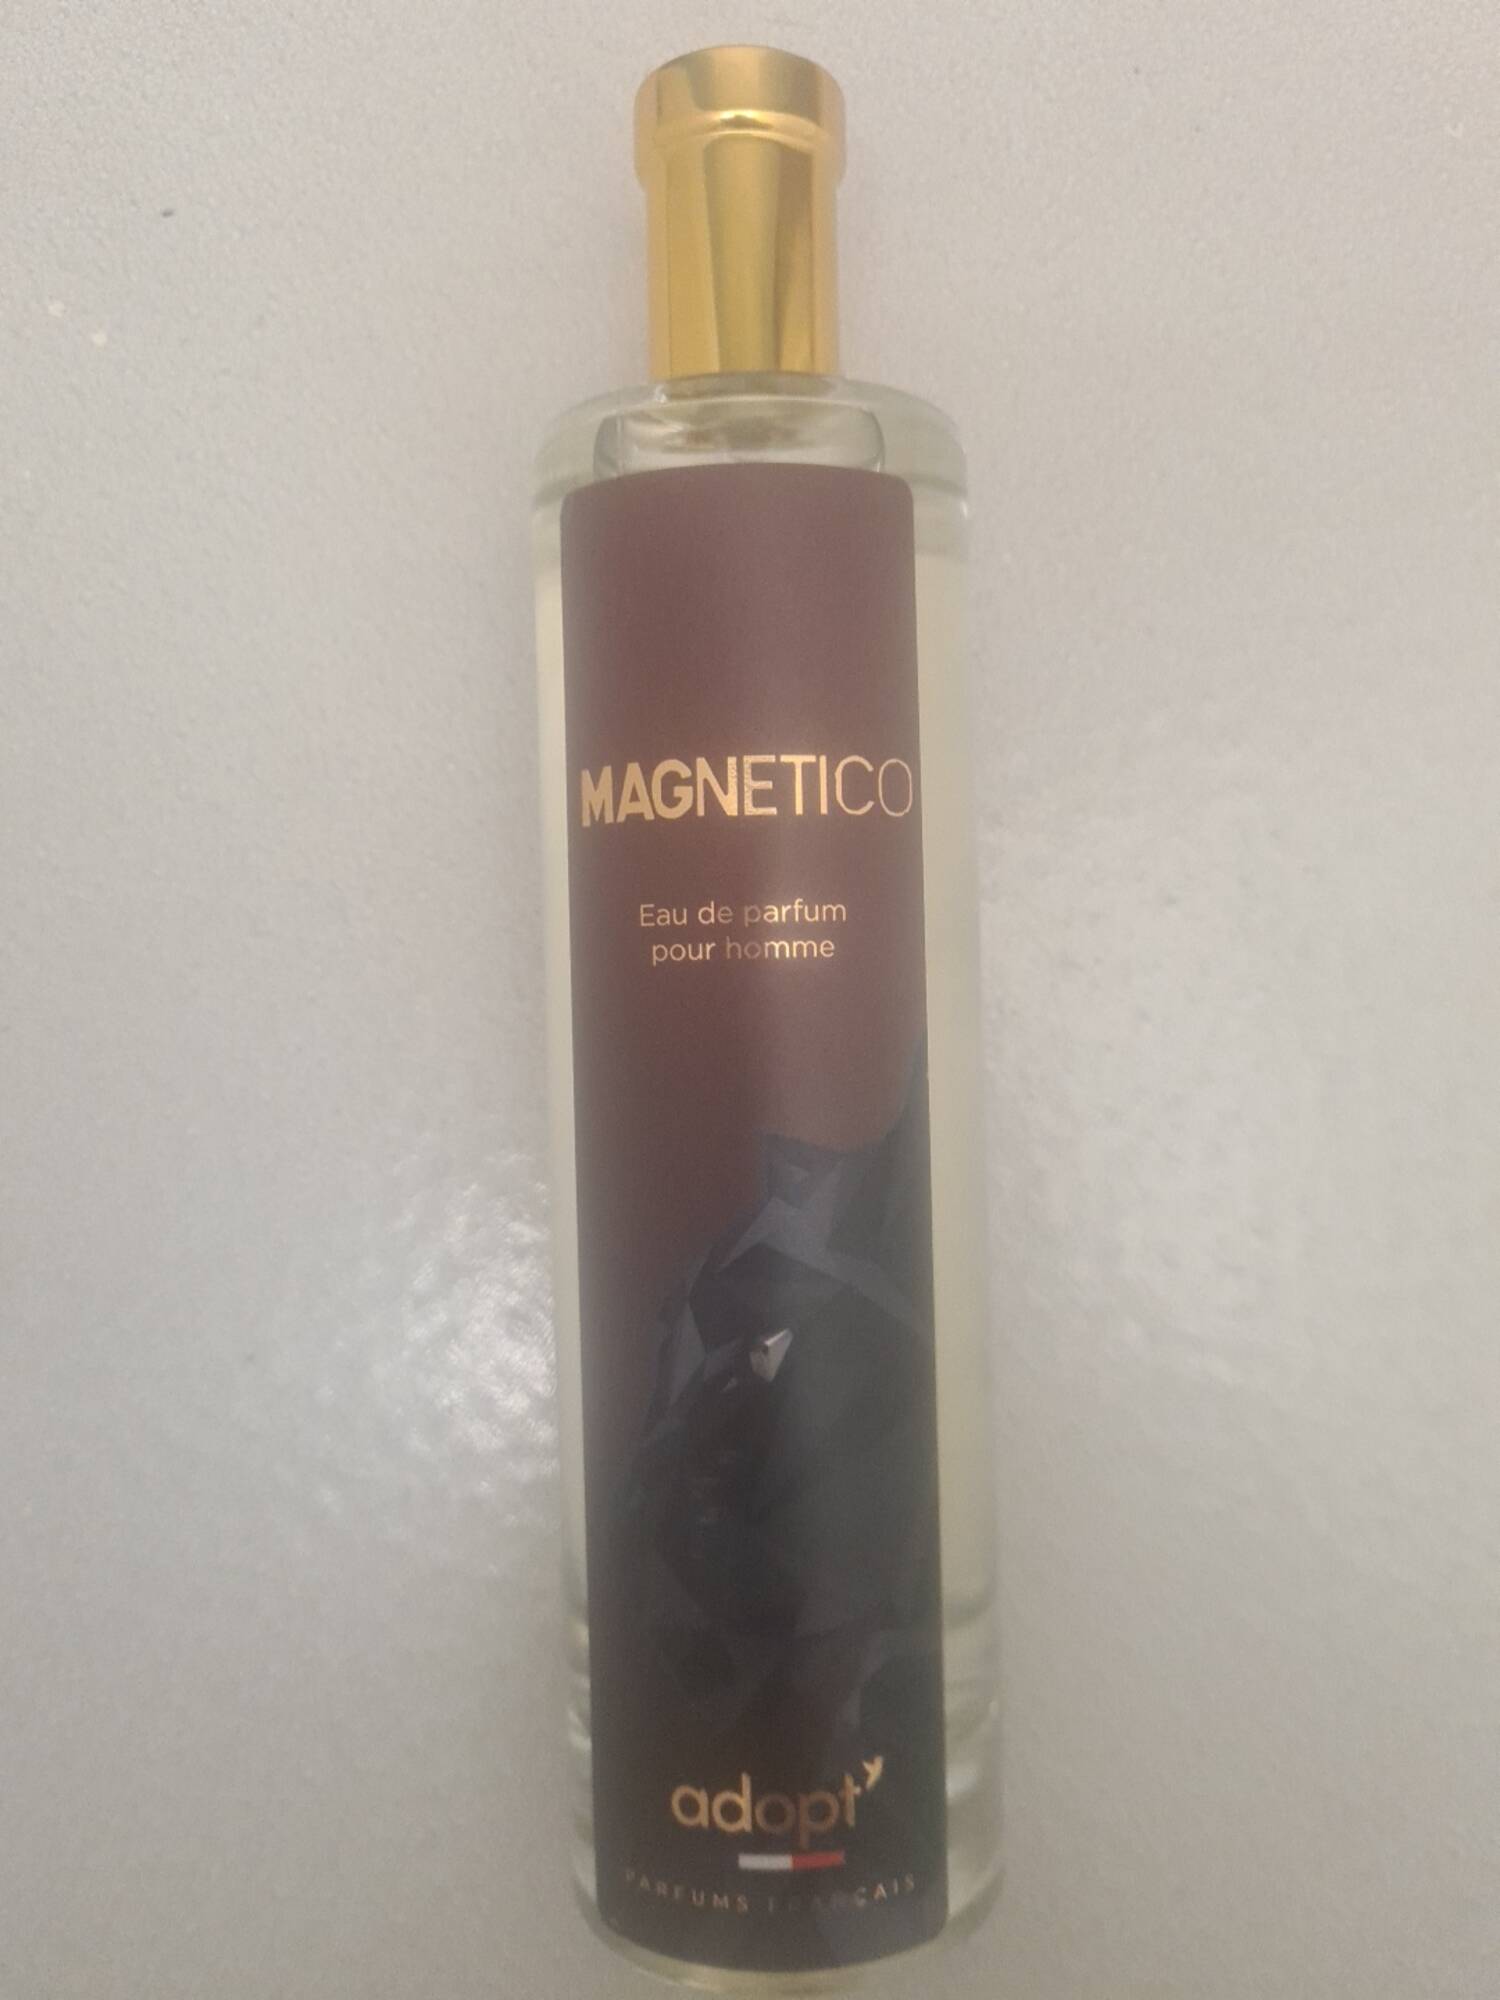 ADOPT' - Magnetico - Eau de parfum pour homme